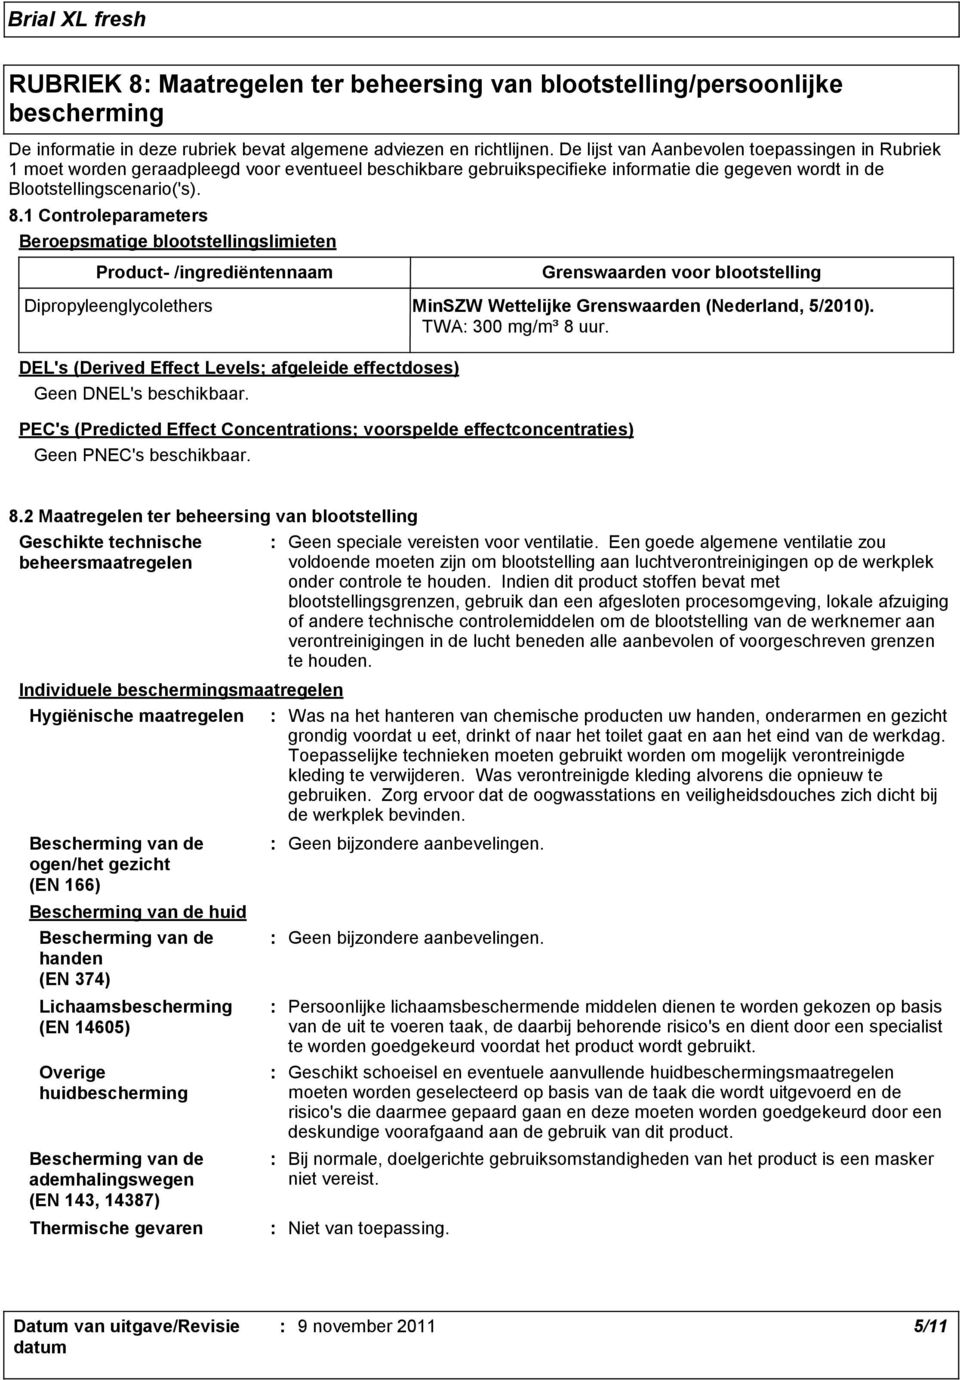 1 Controleparameters Beroepsmatige blootstellingslimieten Product /ingrediëntennaam Grenswaarden voor blootstelling Dipropyleenglycolethers MinSZW Wettelijke Grenswaarden (Nederland, 5/2010).